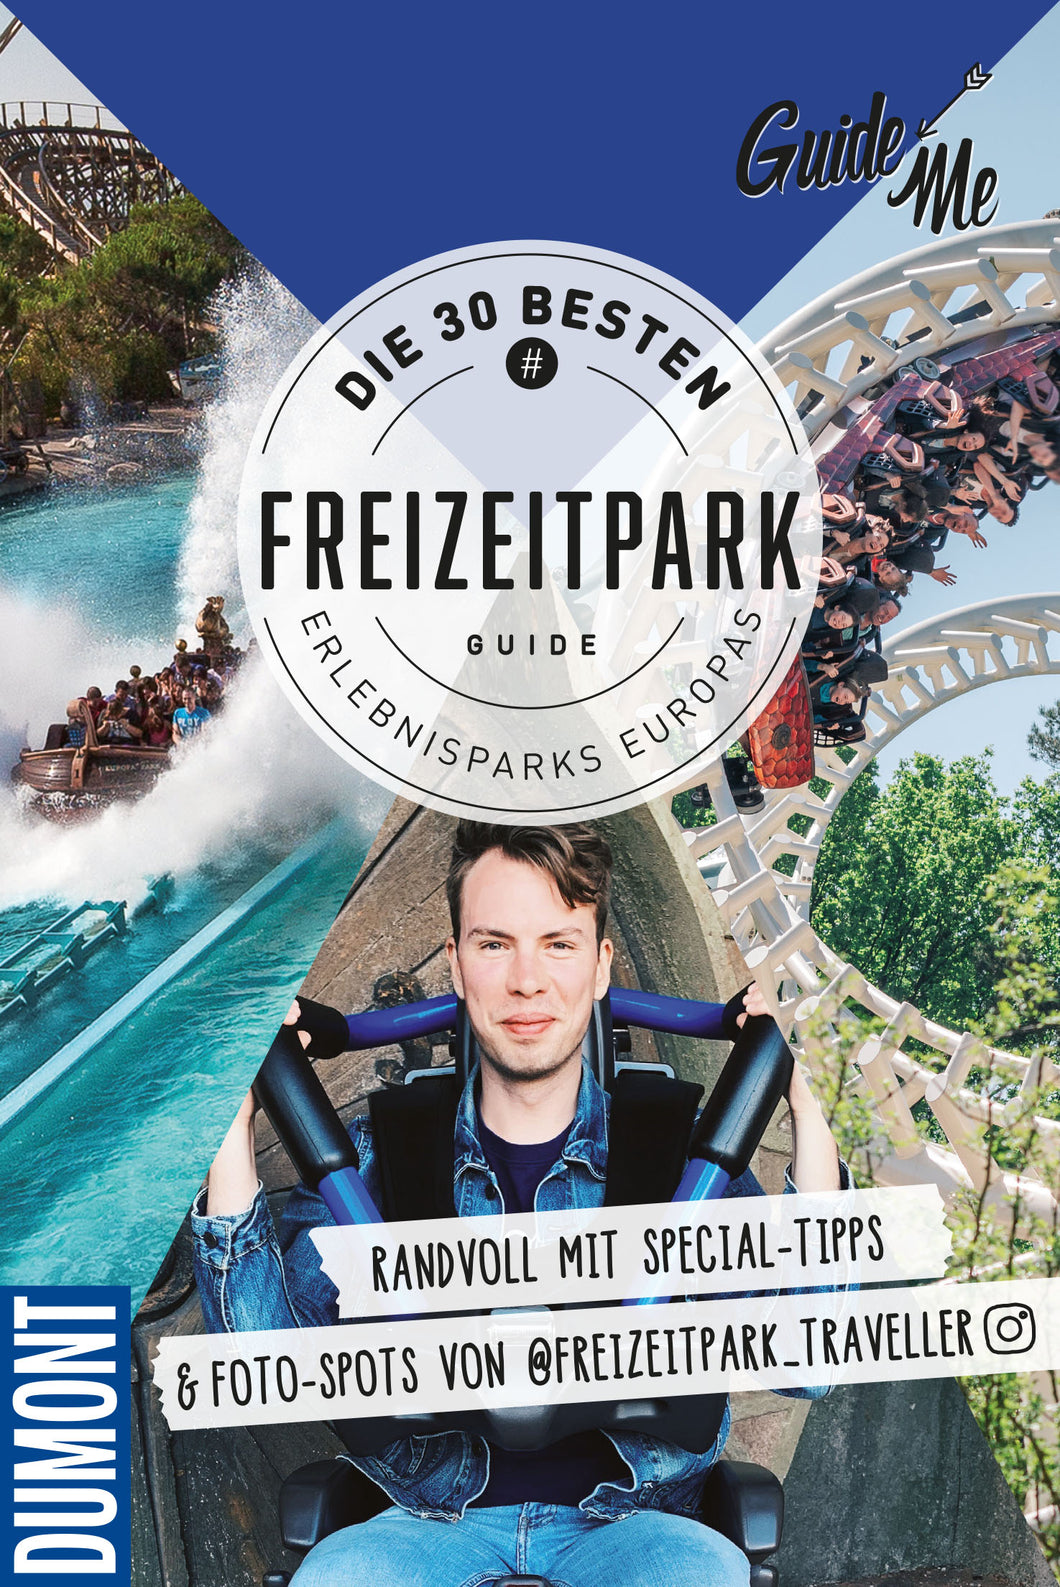 Freizeitpark Guide - DIE 30 BESTEN ERLEBNISPARKS EUROPAS